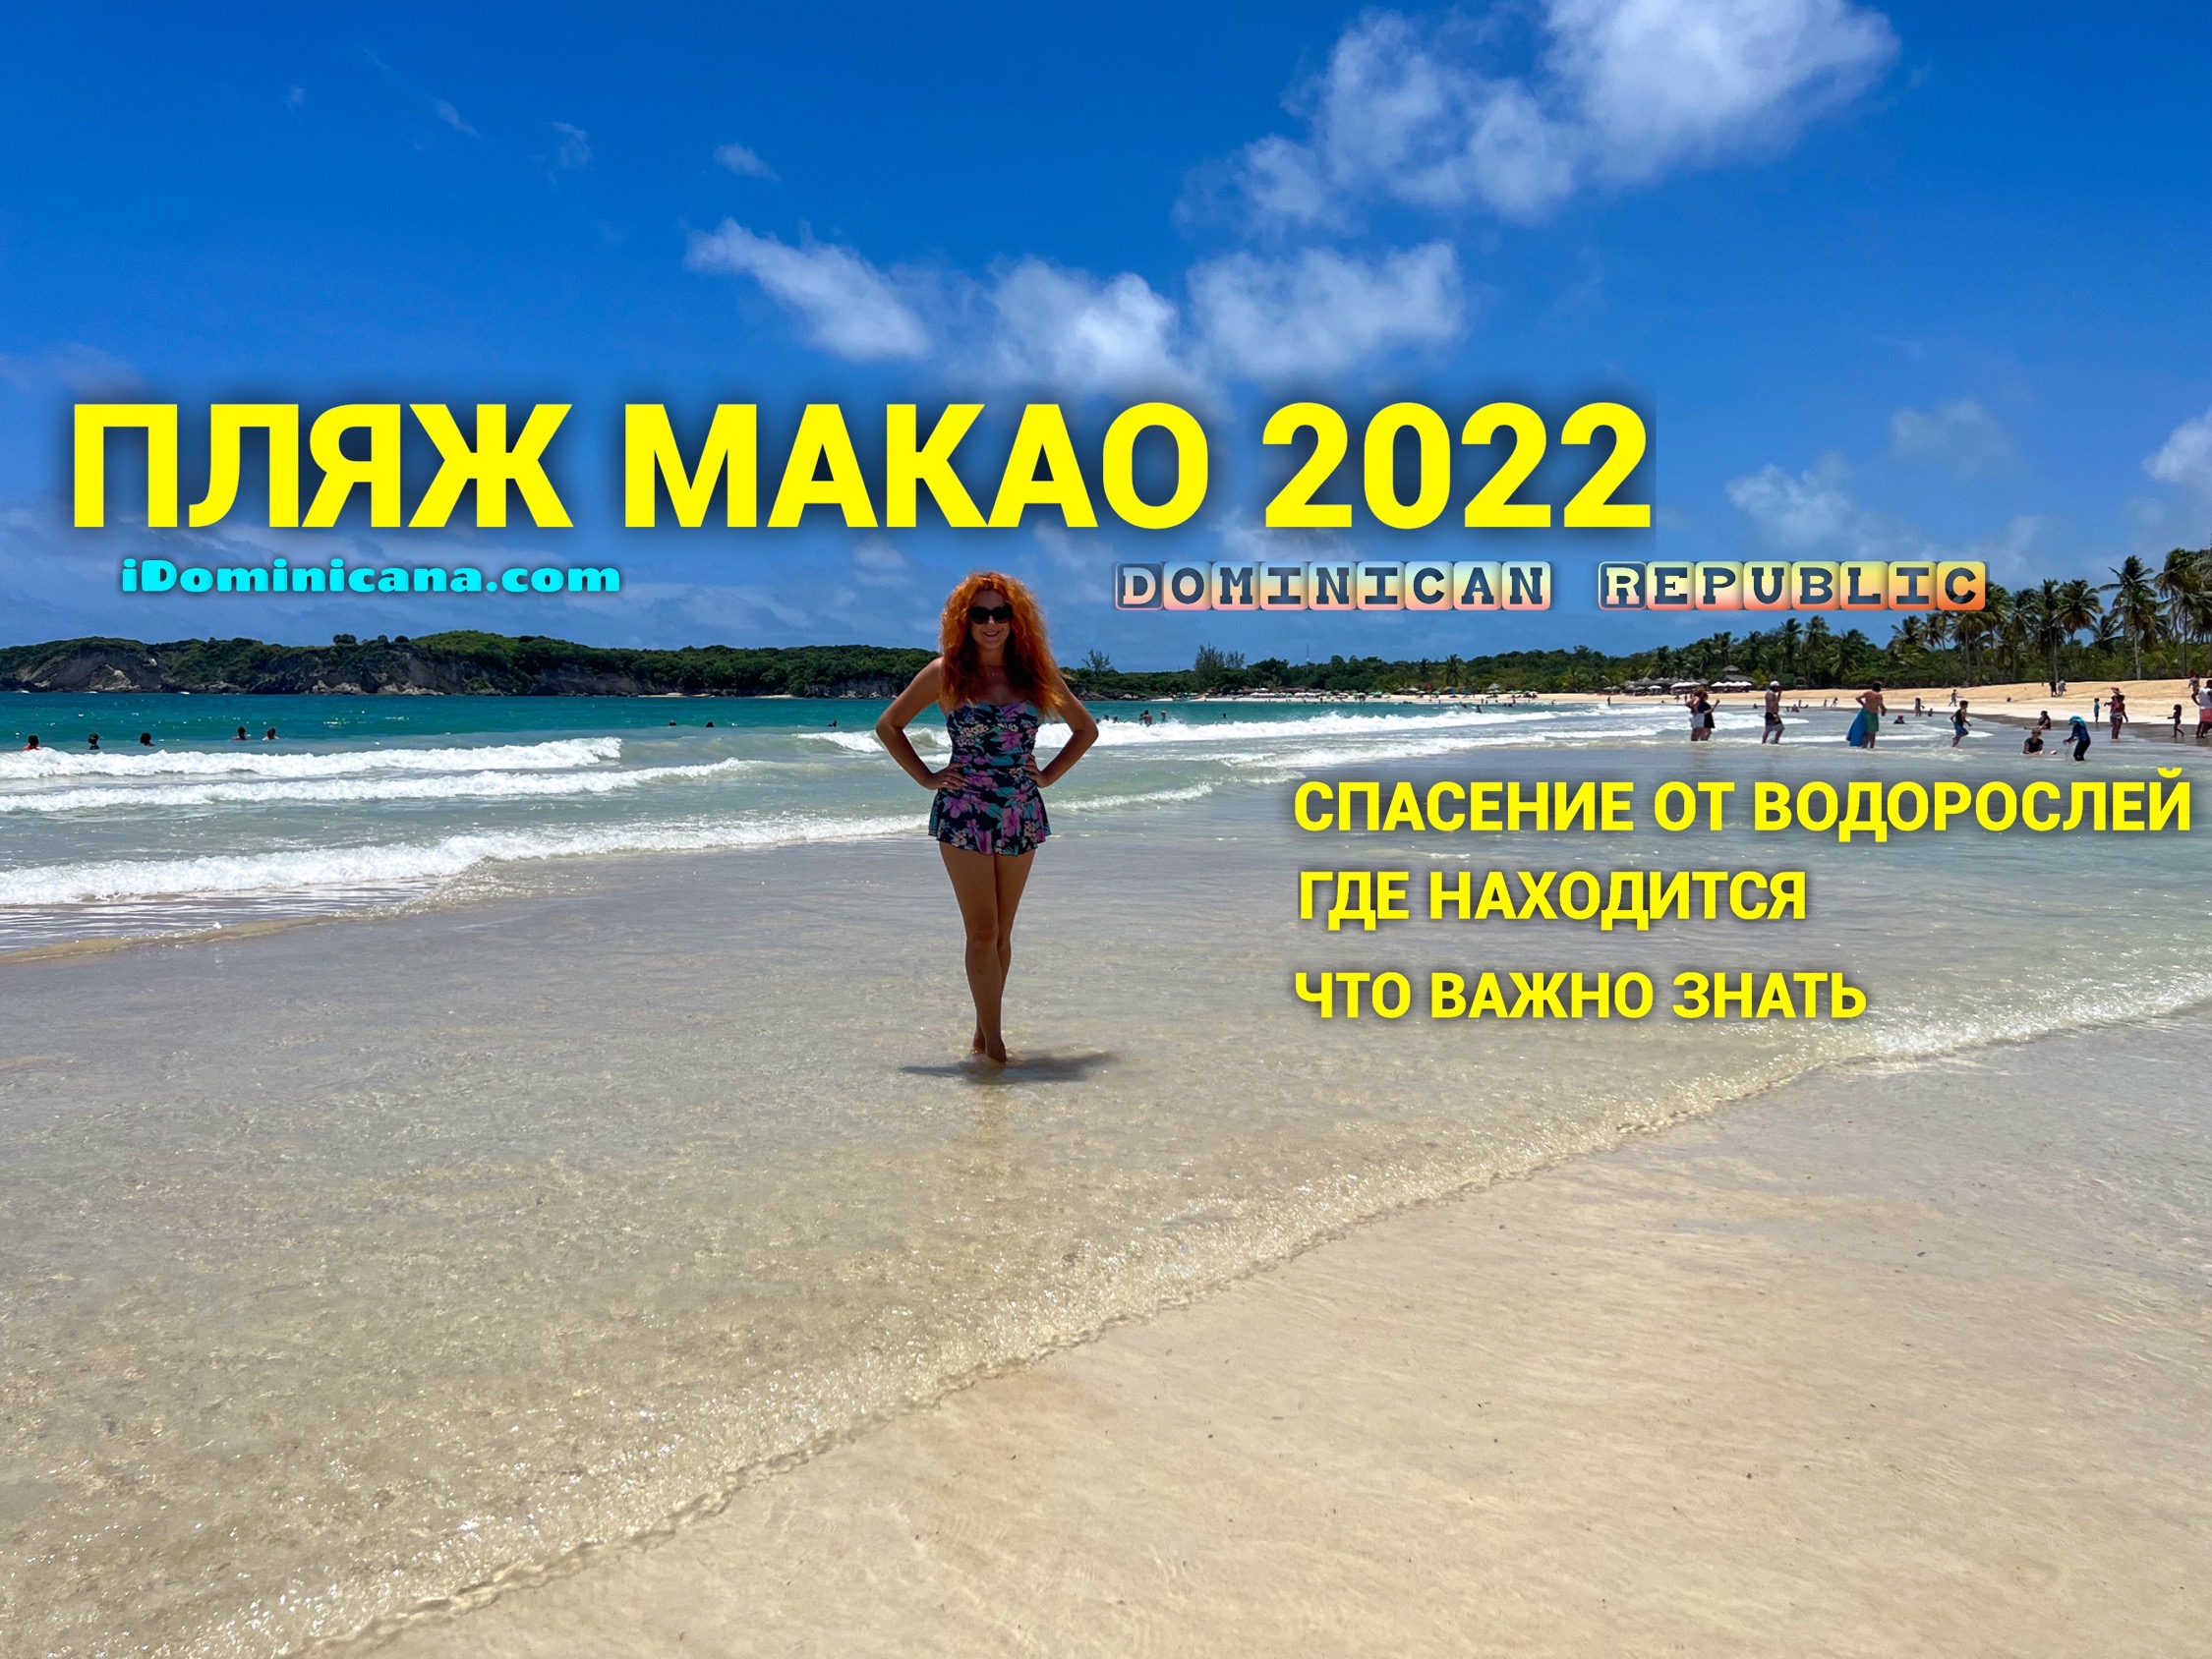 Пляж Макао 2022: спасение от водорослей и все, что важно знать туристам - ВИДЕО